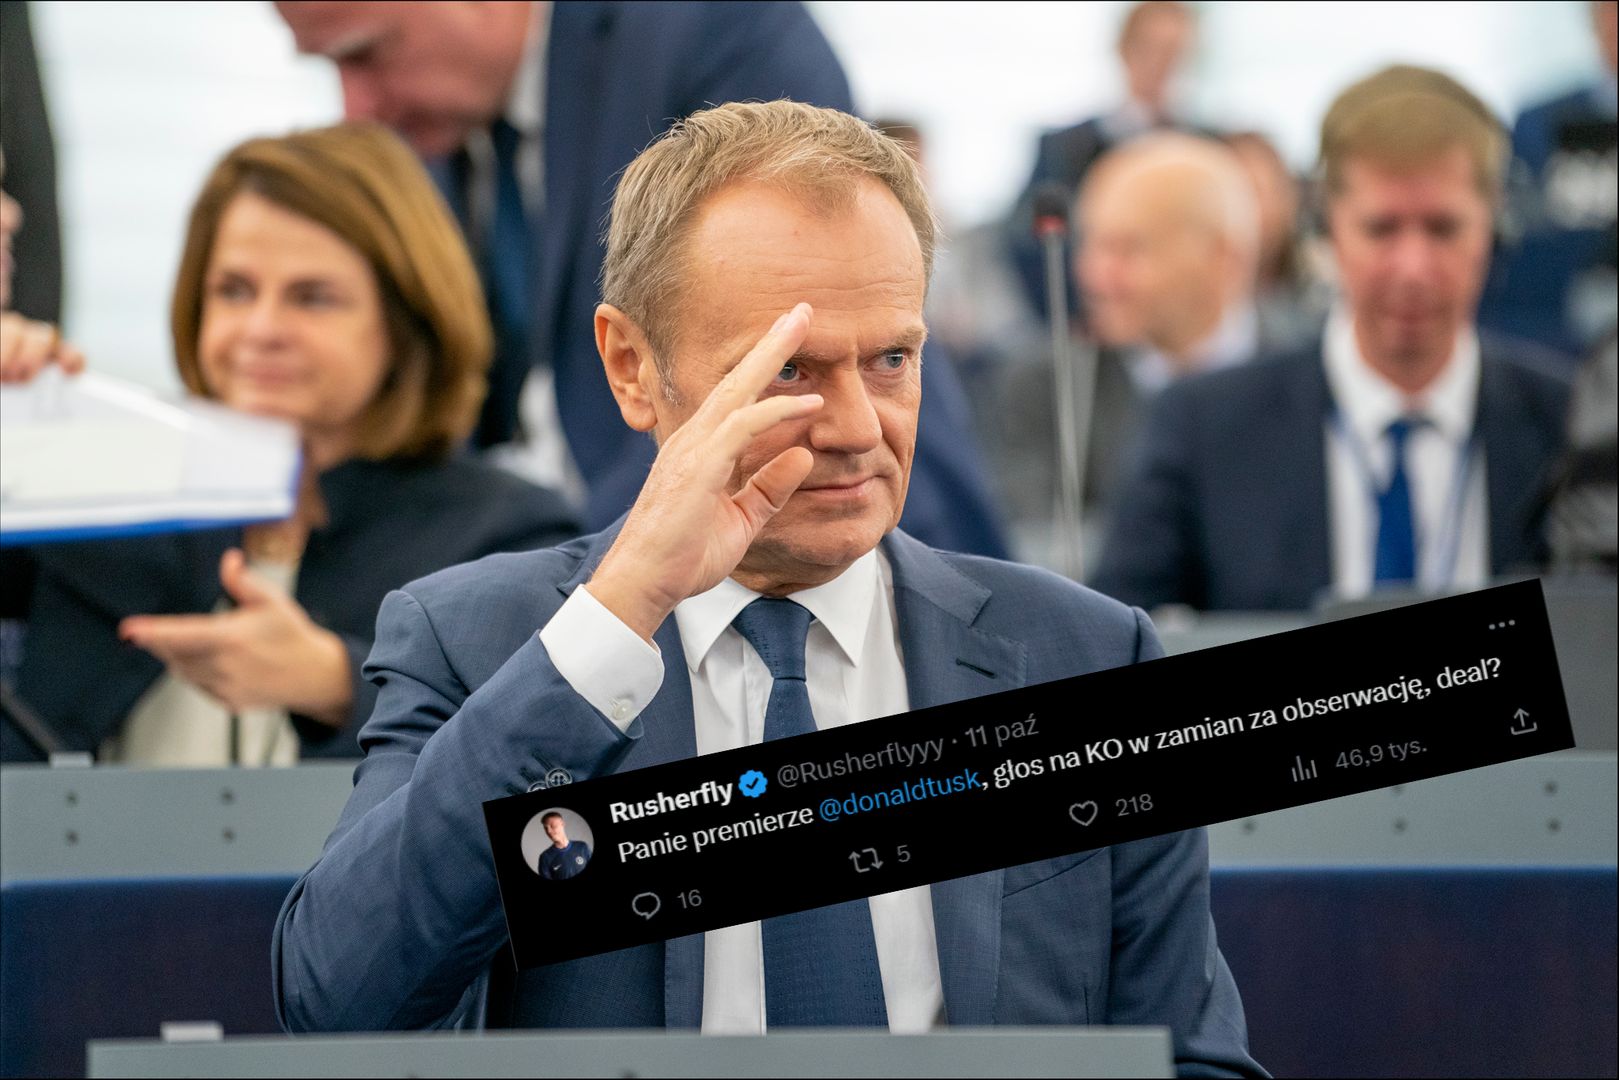 "Panie premierze, głos na KO za obserwację?". Tusk zaskoczył wszystkich